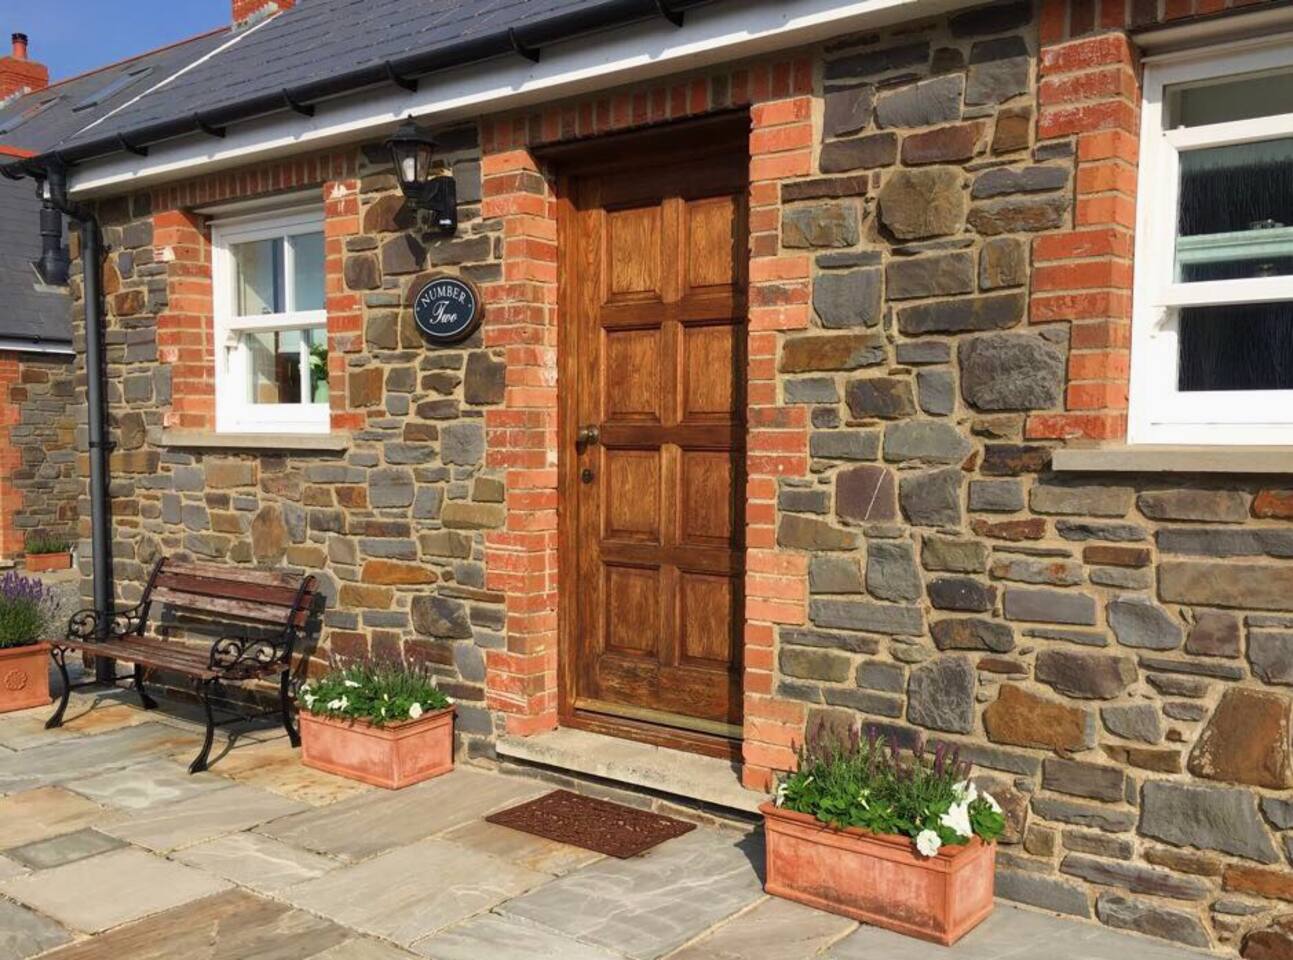 Simpson Hill Farm Pembrokeshire Cottages No 2 Cottages For Rent